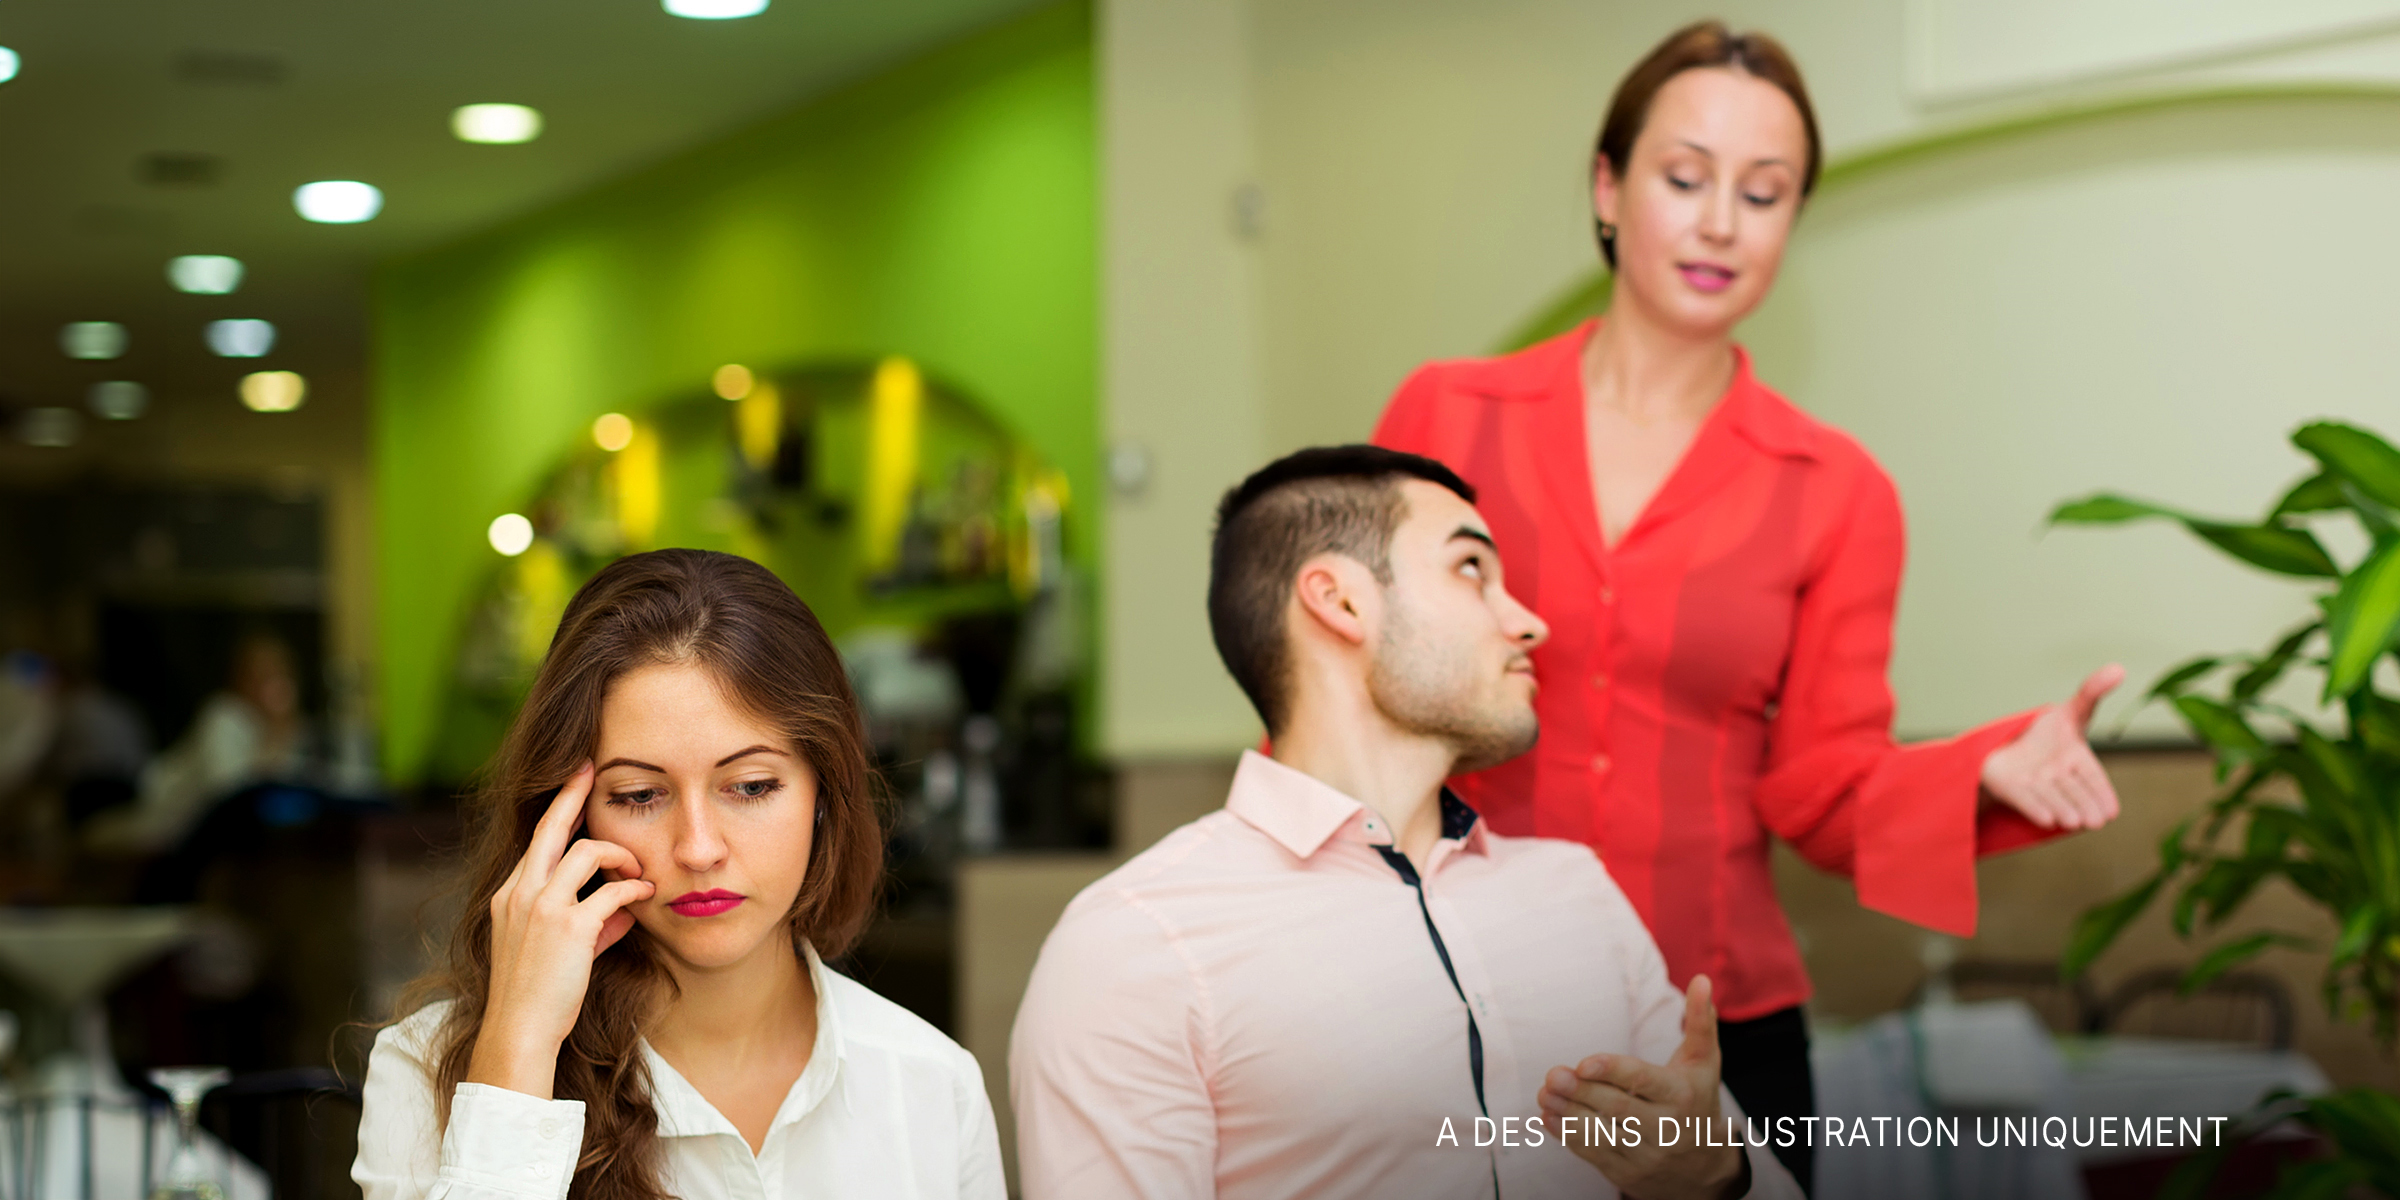 Une femme embarrassée dans un restaurant où son partenaire parle à la serveuse | Source : Shutterstock